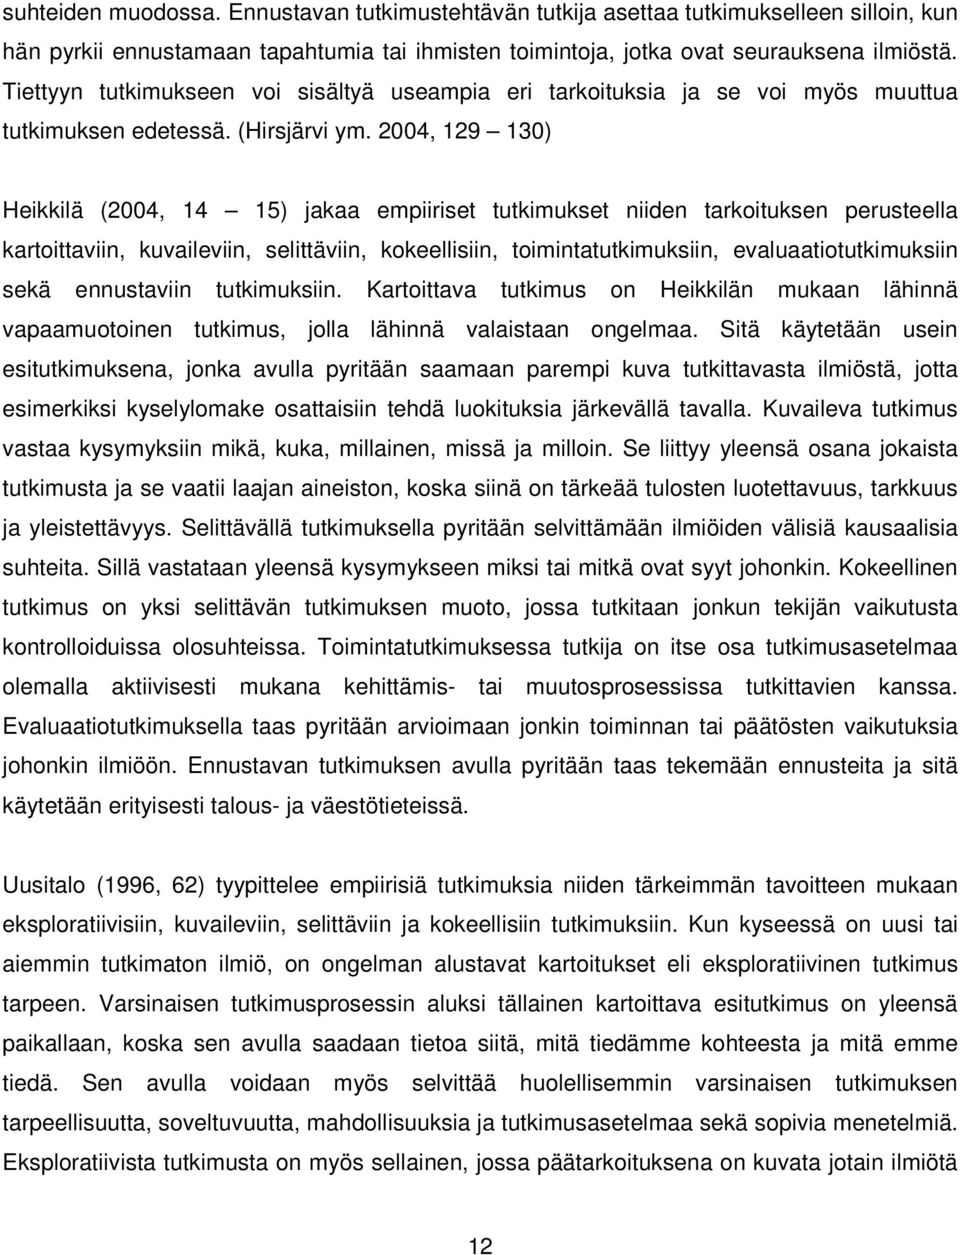 2004, 129 130) Heikkilä (2004, 14 15) jakaa empiiriset tutkimukset niiden tarkoituksen perusteella kartoittaviin, kuvaileviin, selittäviin, kokeellisiin, toimintatutkimuksiin, evaluaatiotutkimuksiin